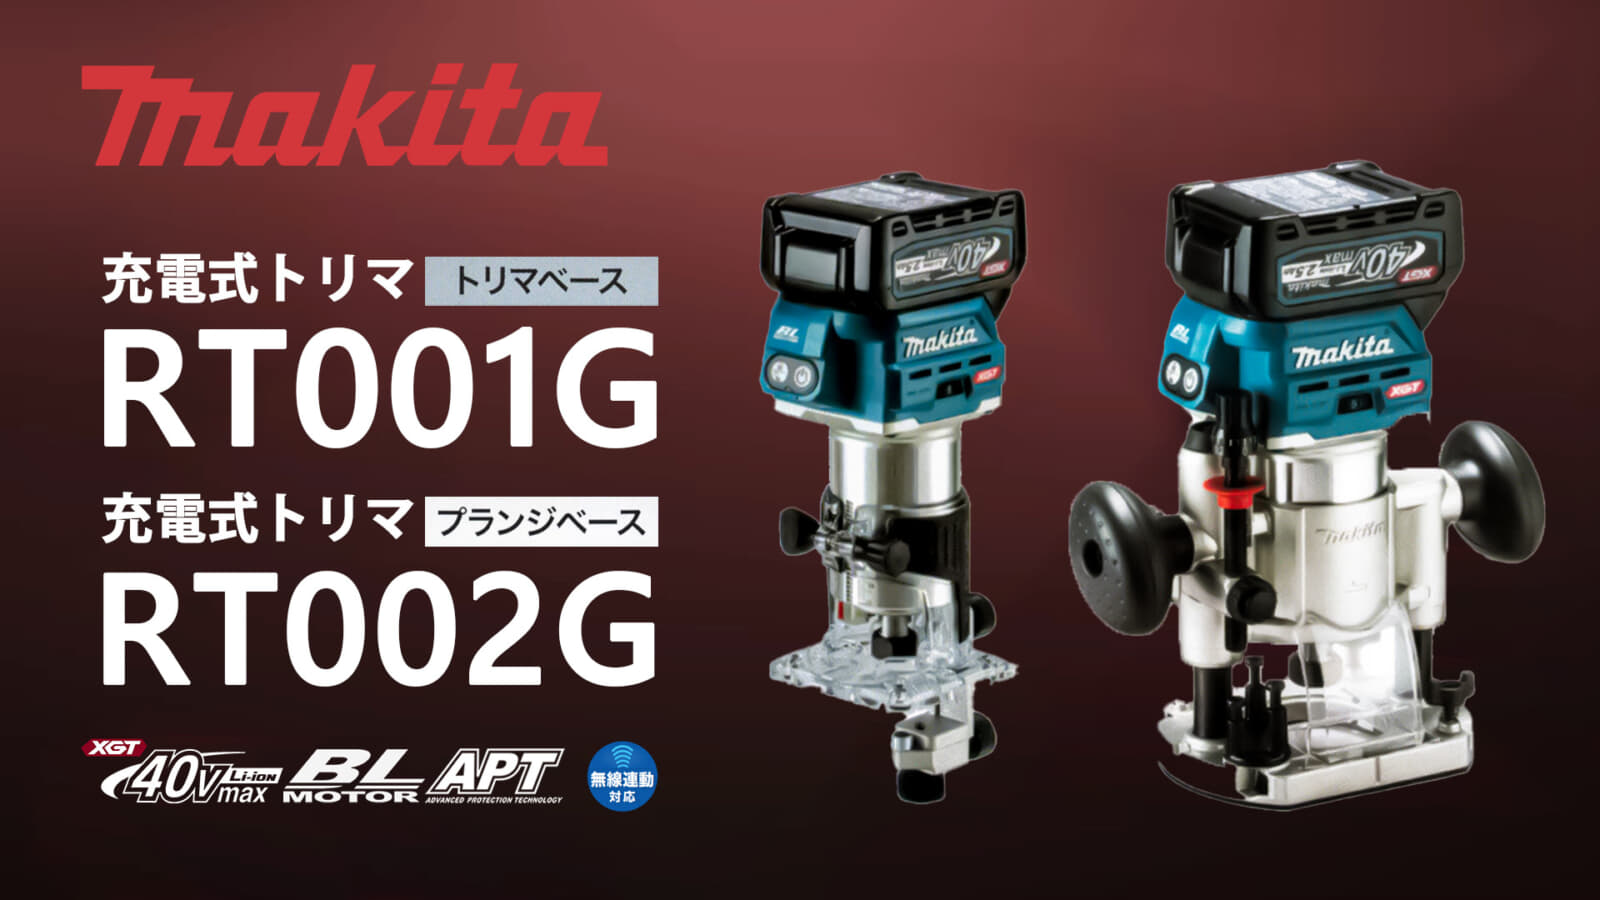 マキタ RT001G/RT002G 充電式トリマを発売、40Vmaxシリーズ初のトリマが登場